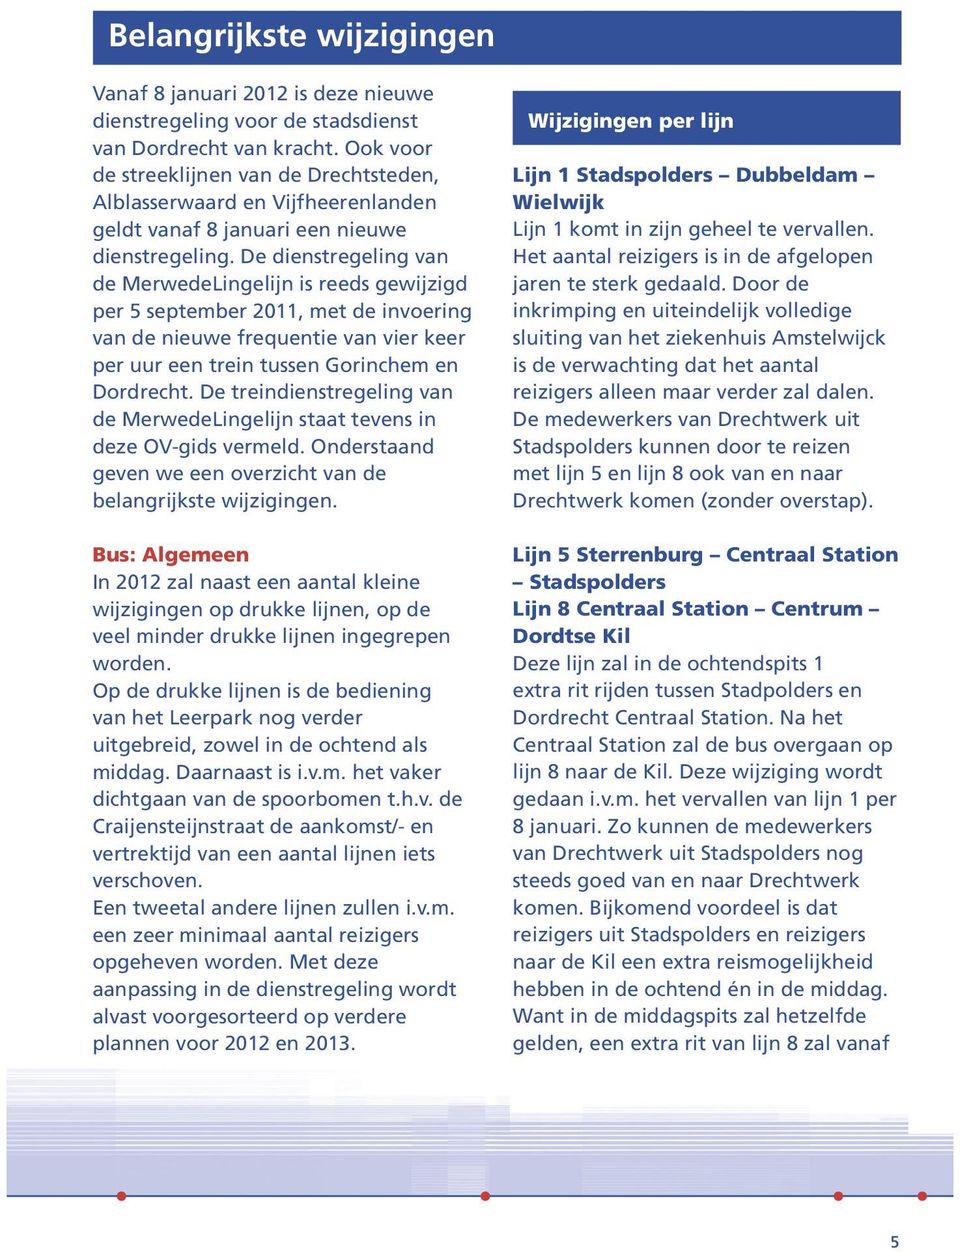 De dienstregeling van de MerwedeLingelijn is reeds gewijzigd per 5 september 2011, met de invoering van de nieuwe frequentie van vier keer per uur een trein tussen Gorinchem en Dordrecht.